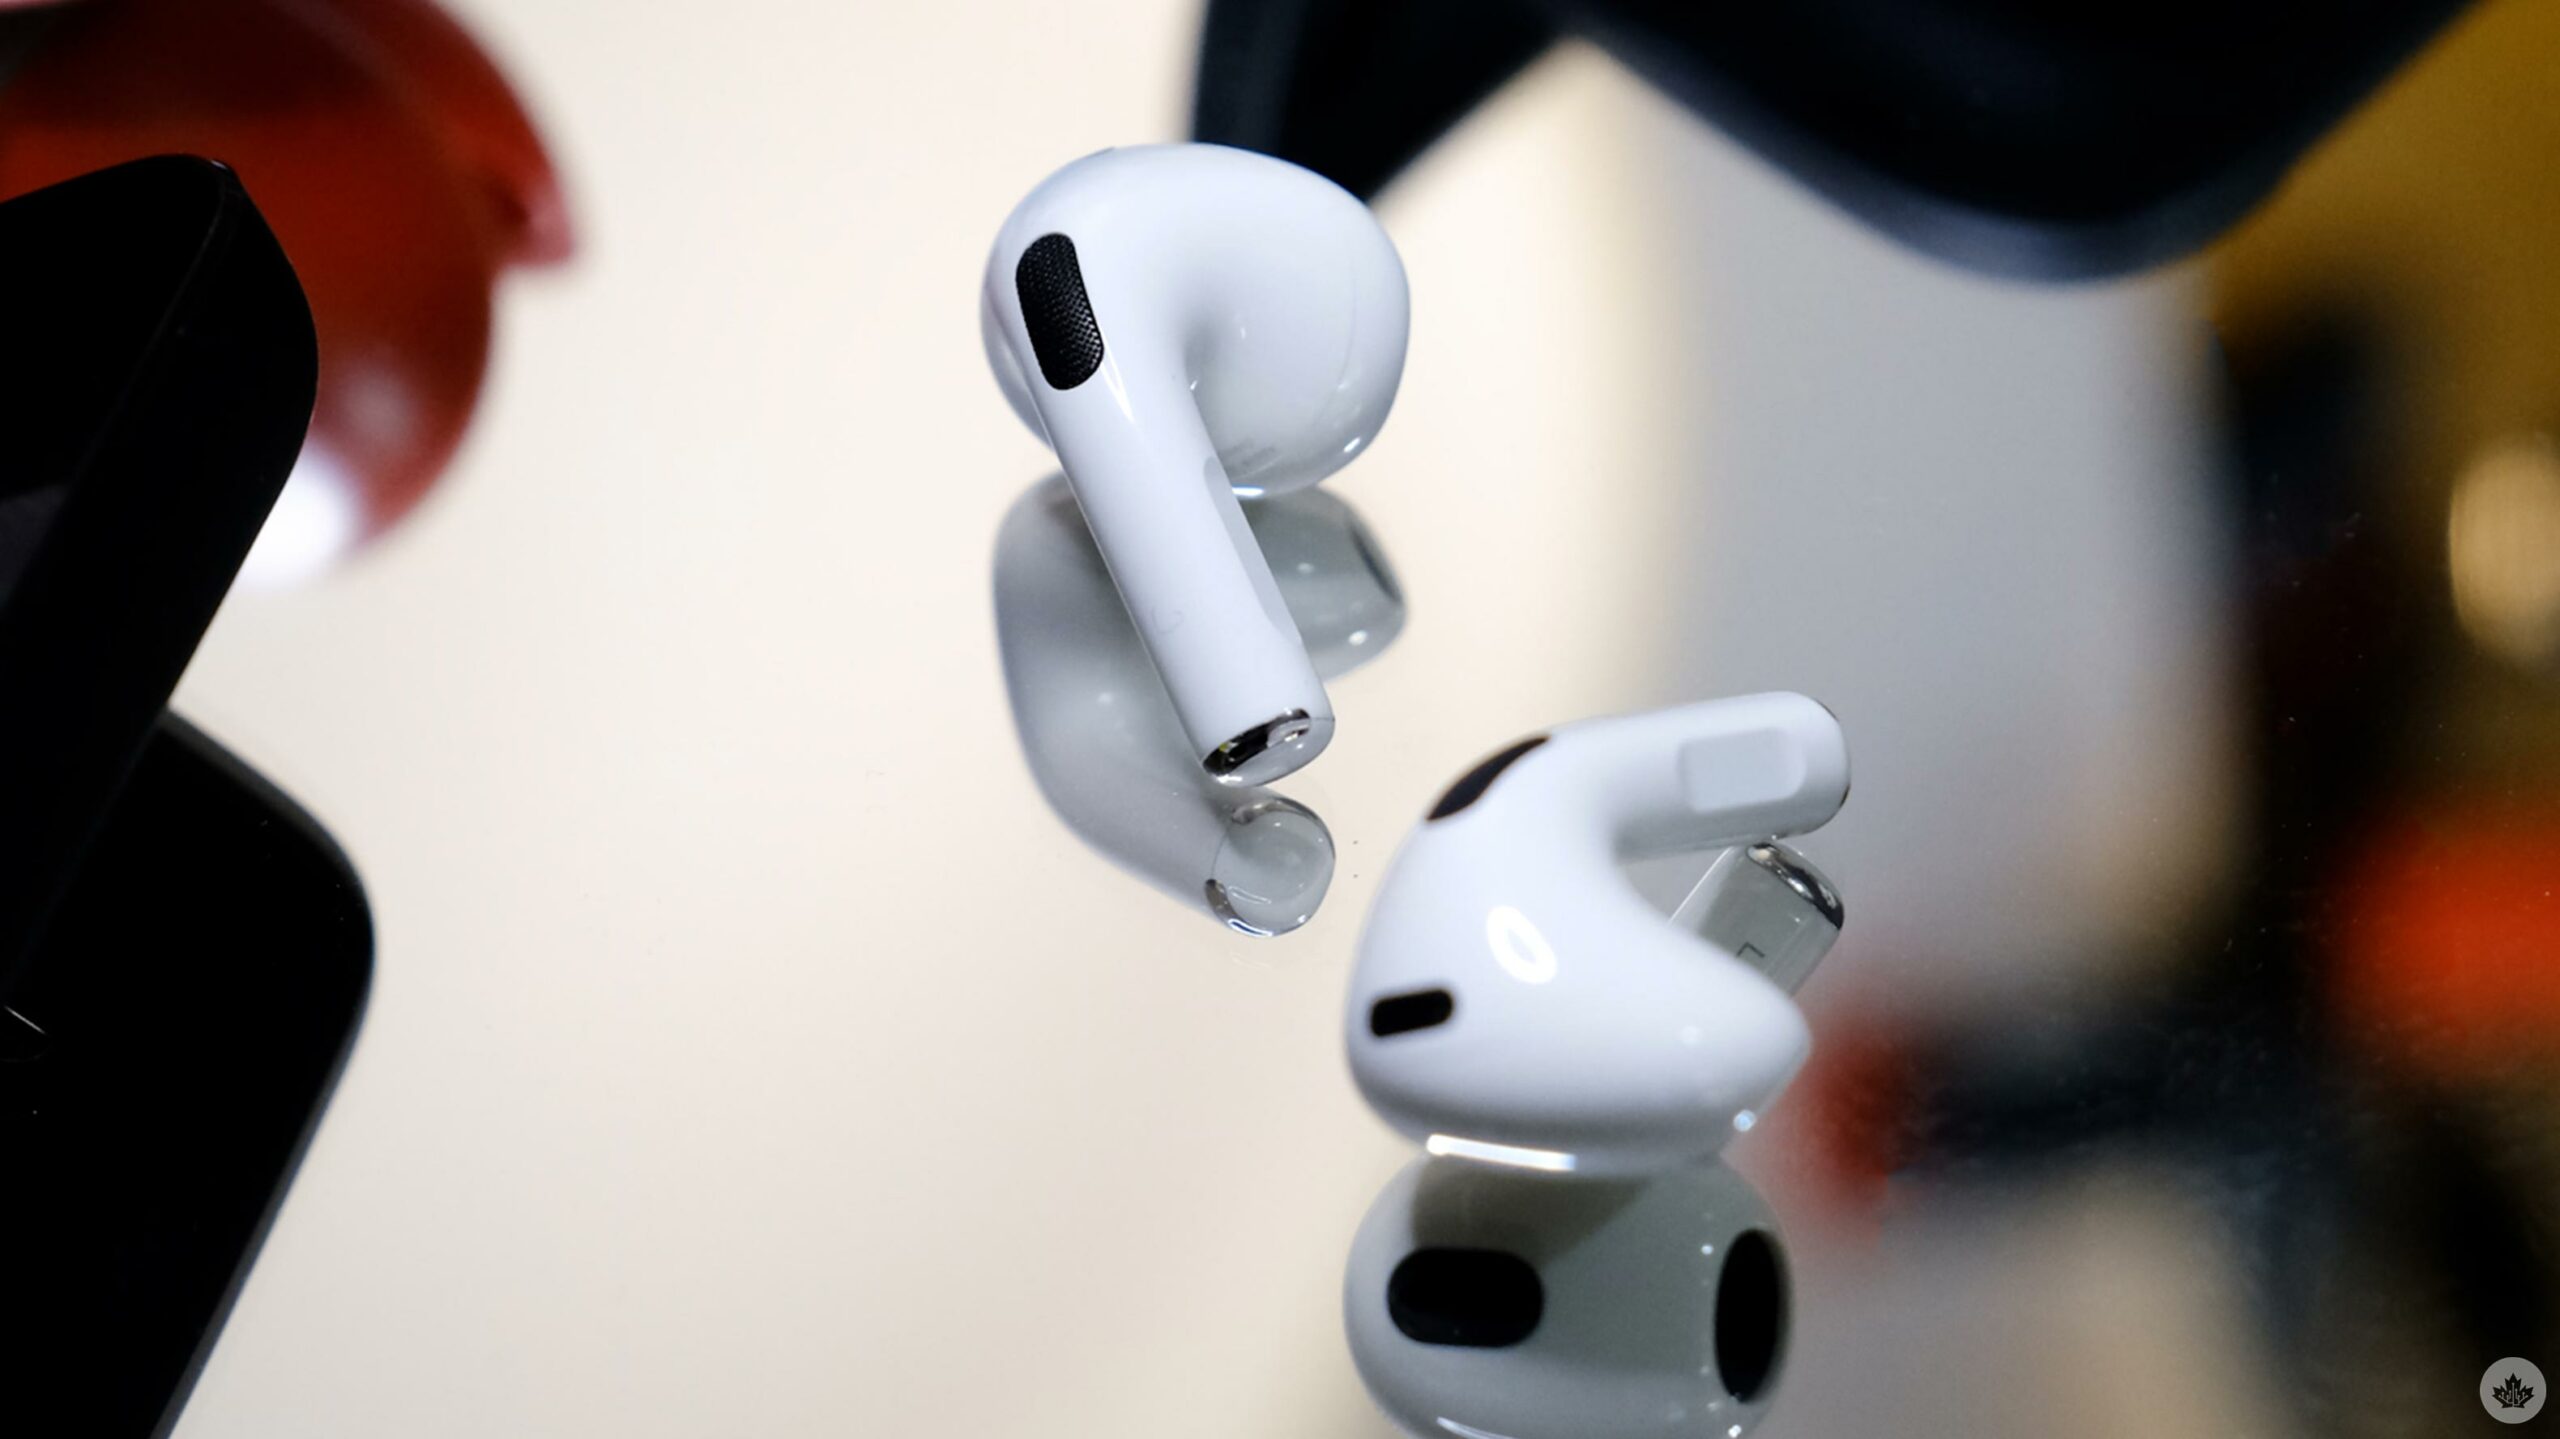 Il vicepresidente di Apple afferma che gli AirPods beneficeranno di “più larghezza di banda” rispetto alla tecnologia Bluetooth